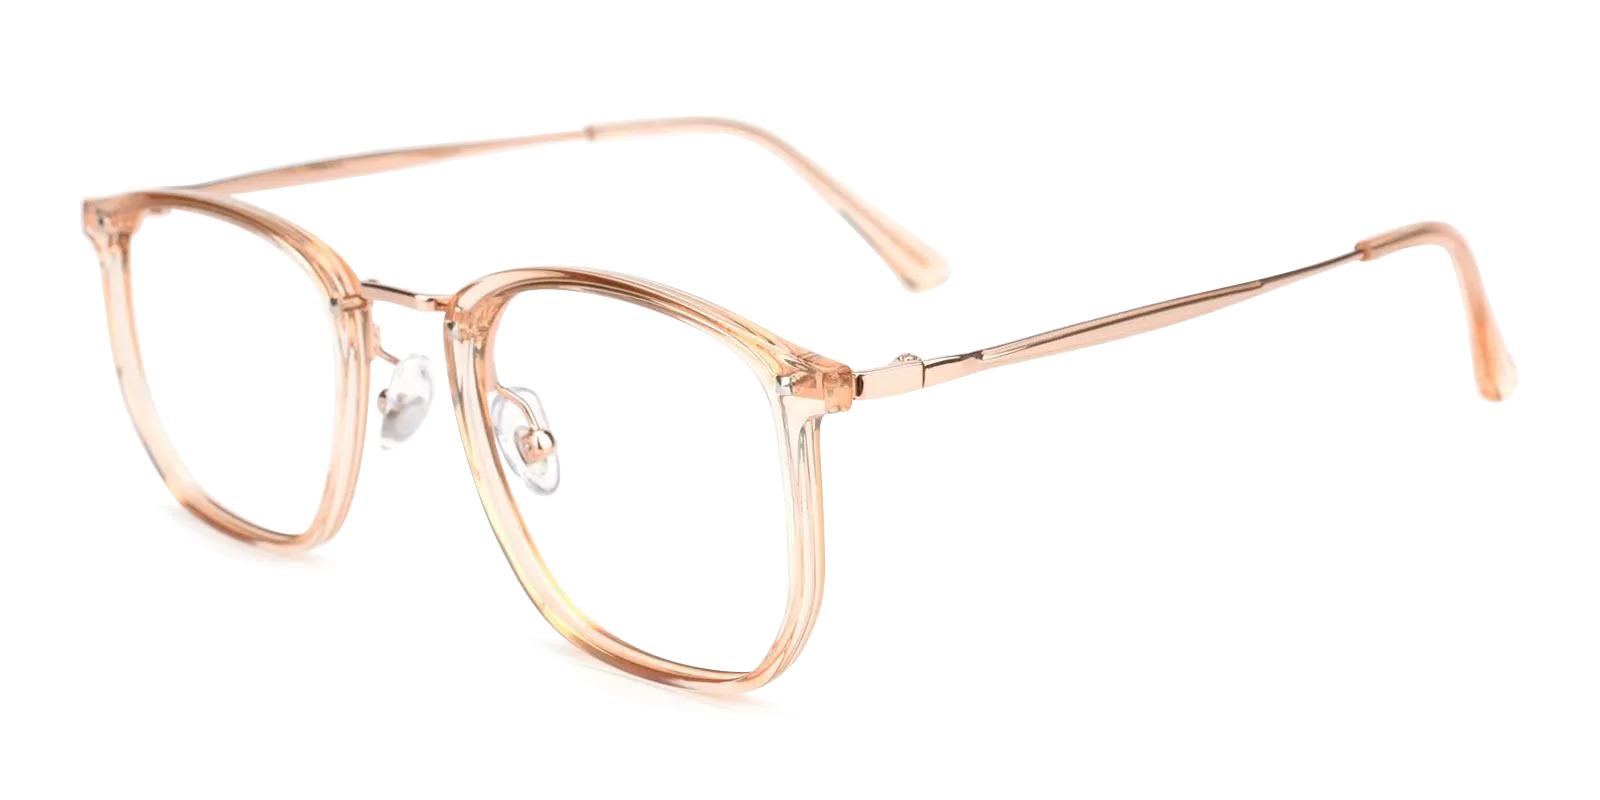 Eatry Orange Titanium , TR Eyeglasses , NosePads Frames from ABBE Glasses